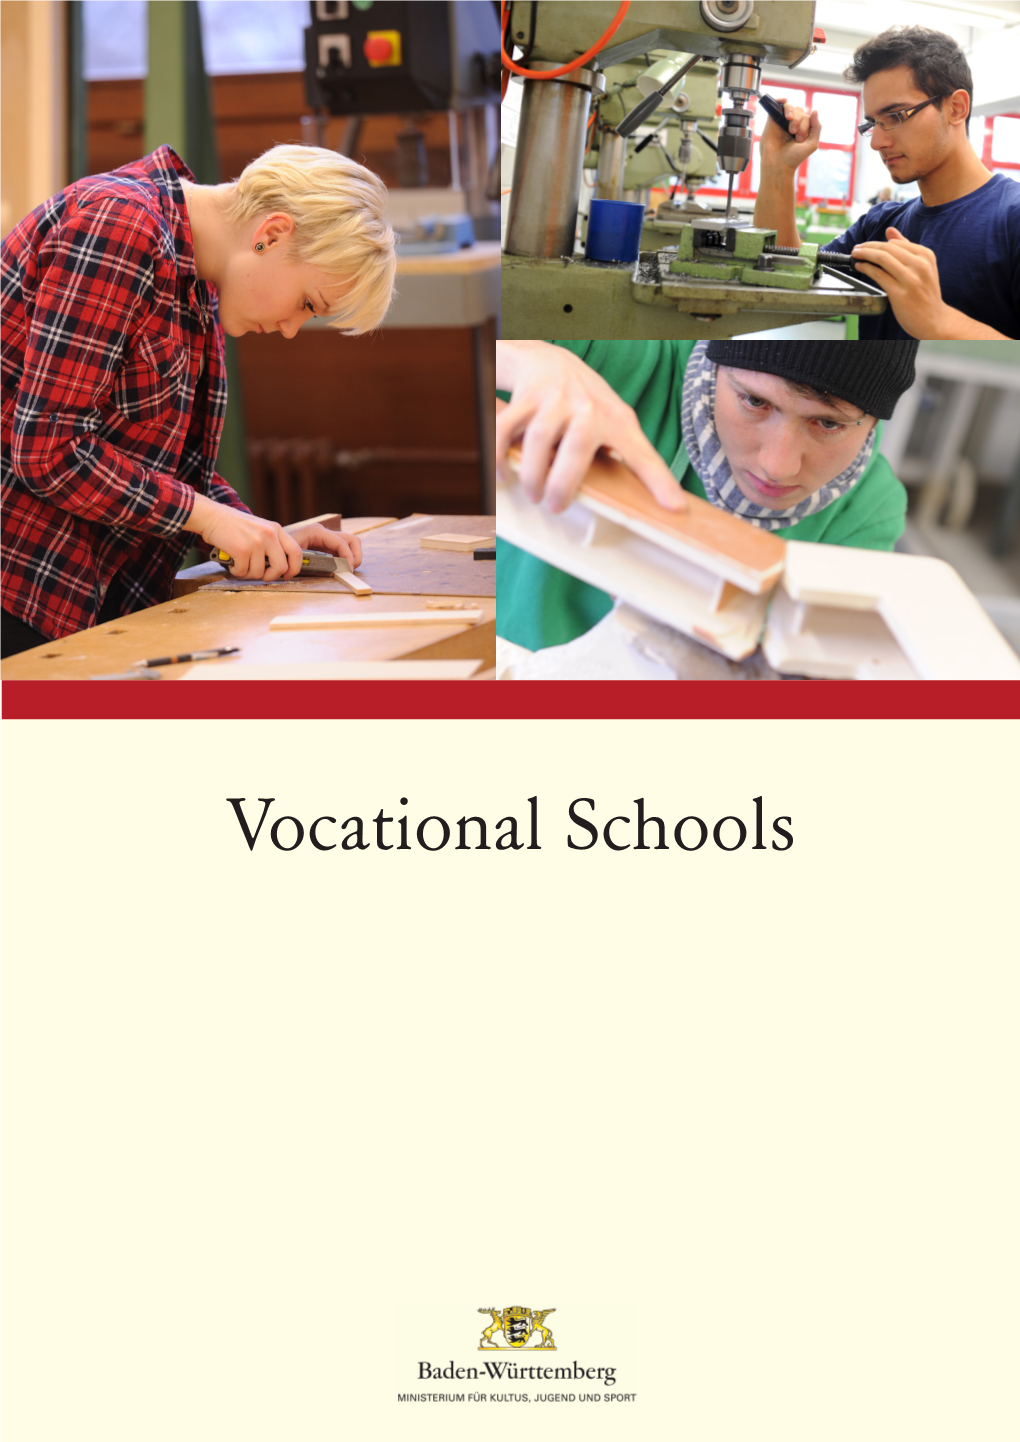 Vocational Schools 2 CONTENTS